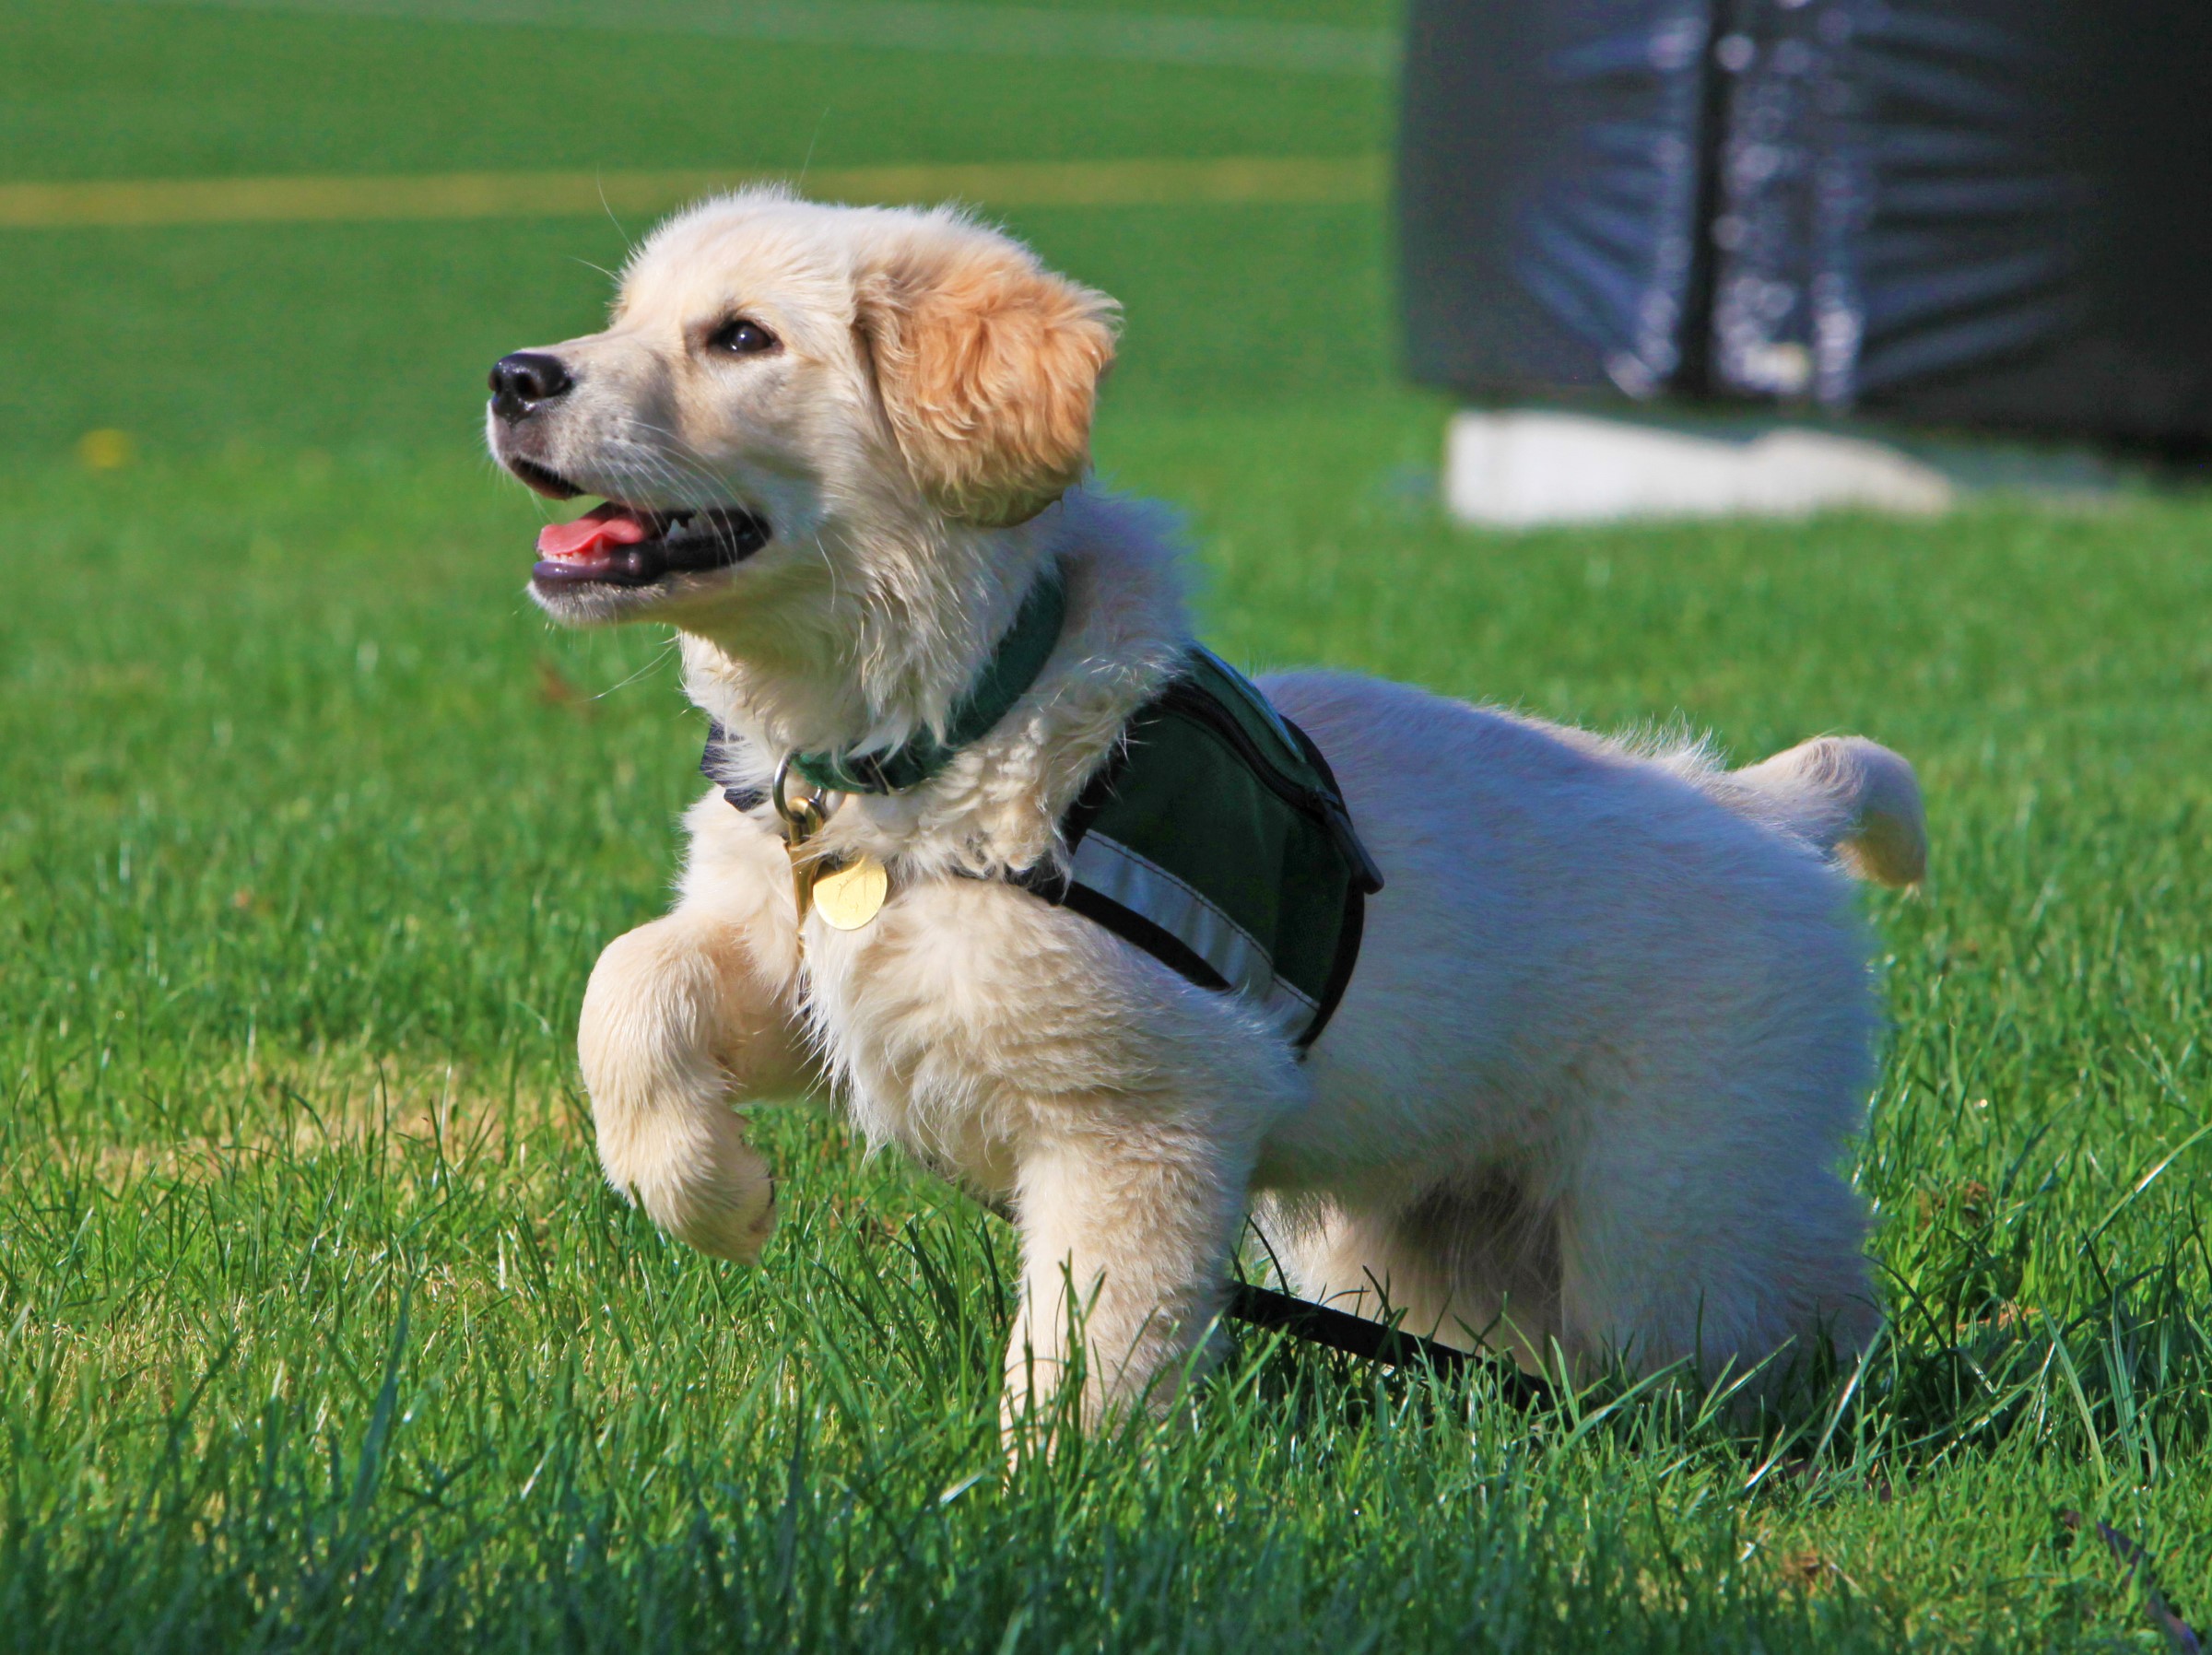 Summit puppy in training